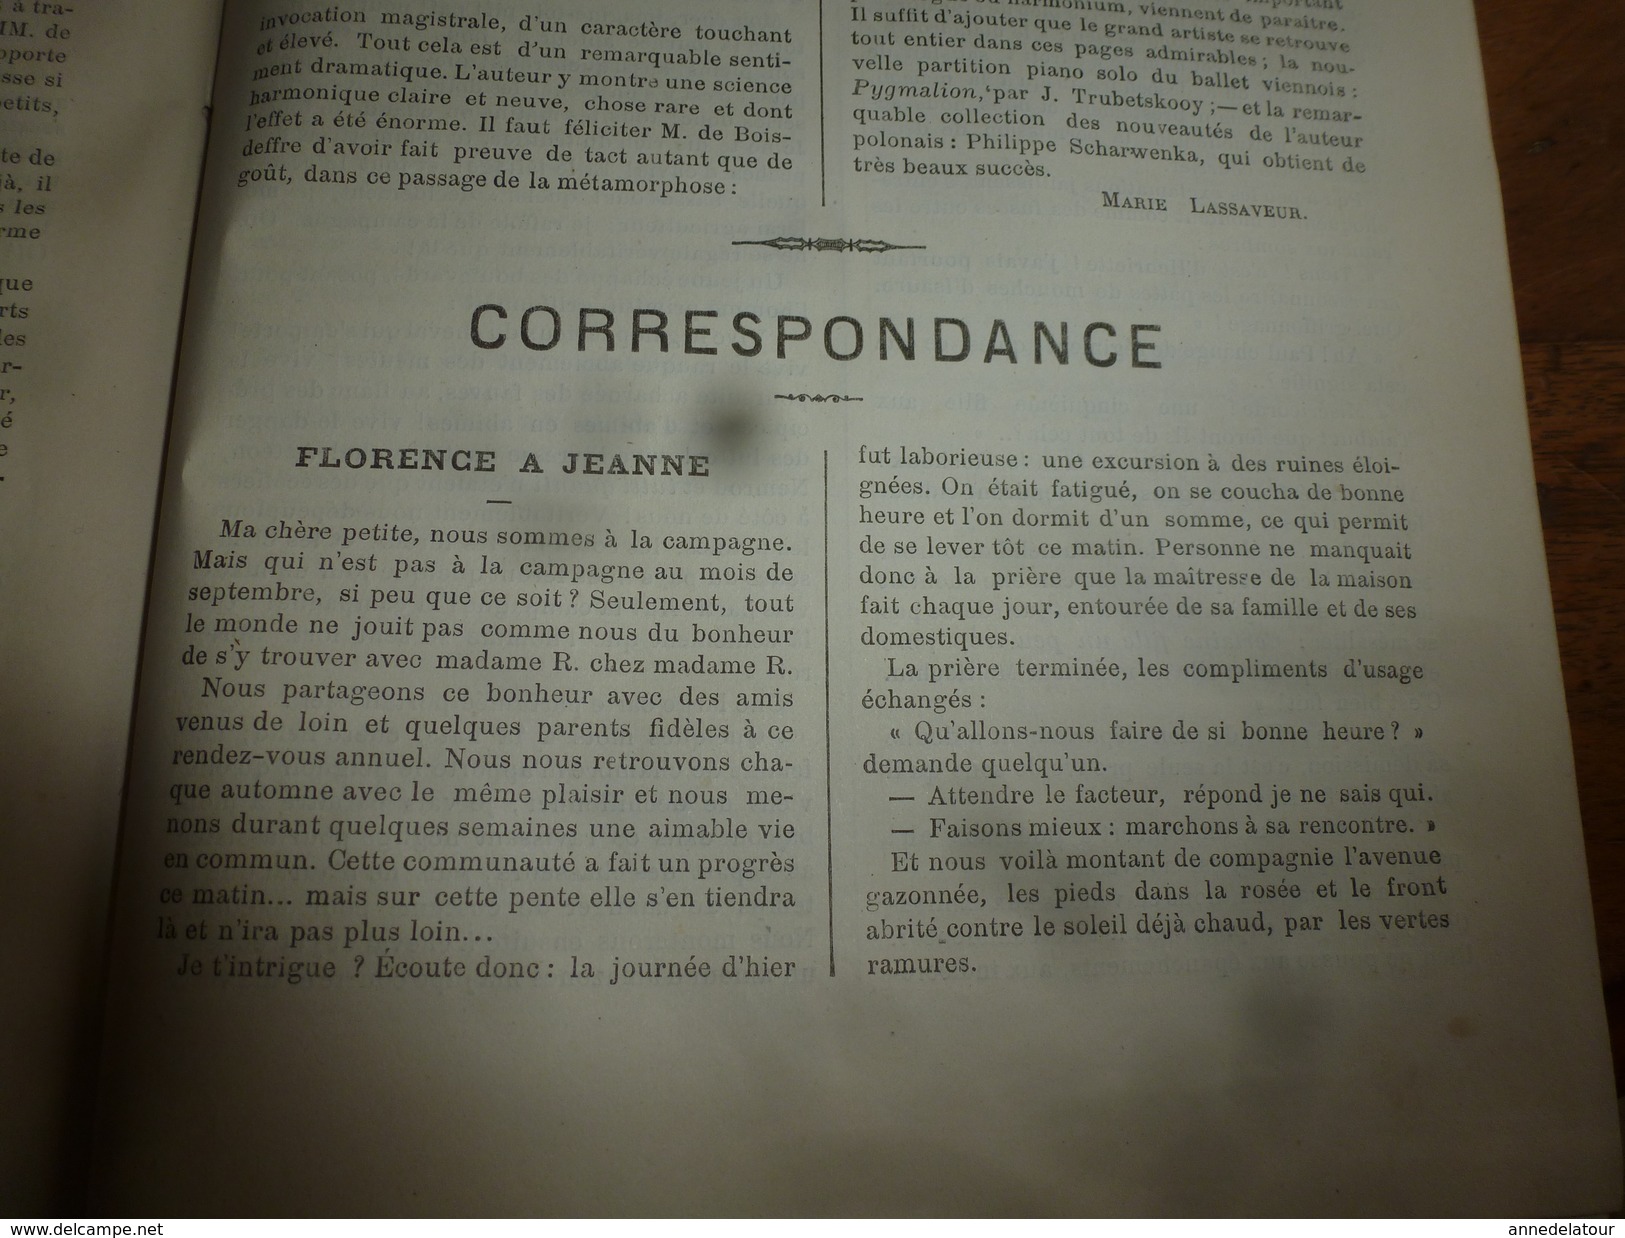 1882 JOURNAL DES DEMOISELLES : Gravures de la Mode de Paris ;Fleurs étranges; Porte-Bonheur et Porte-Veine; etc